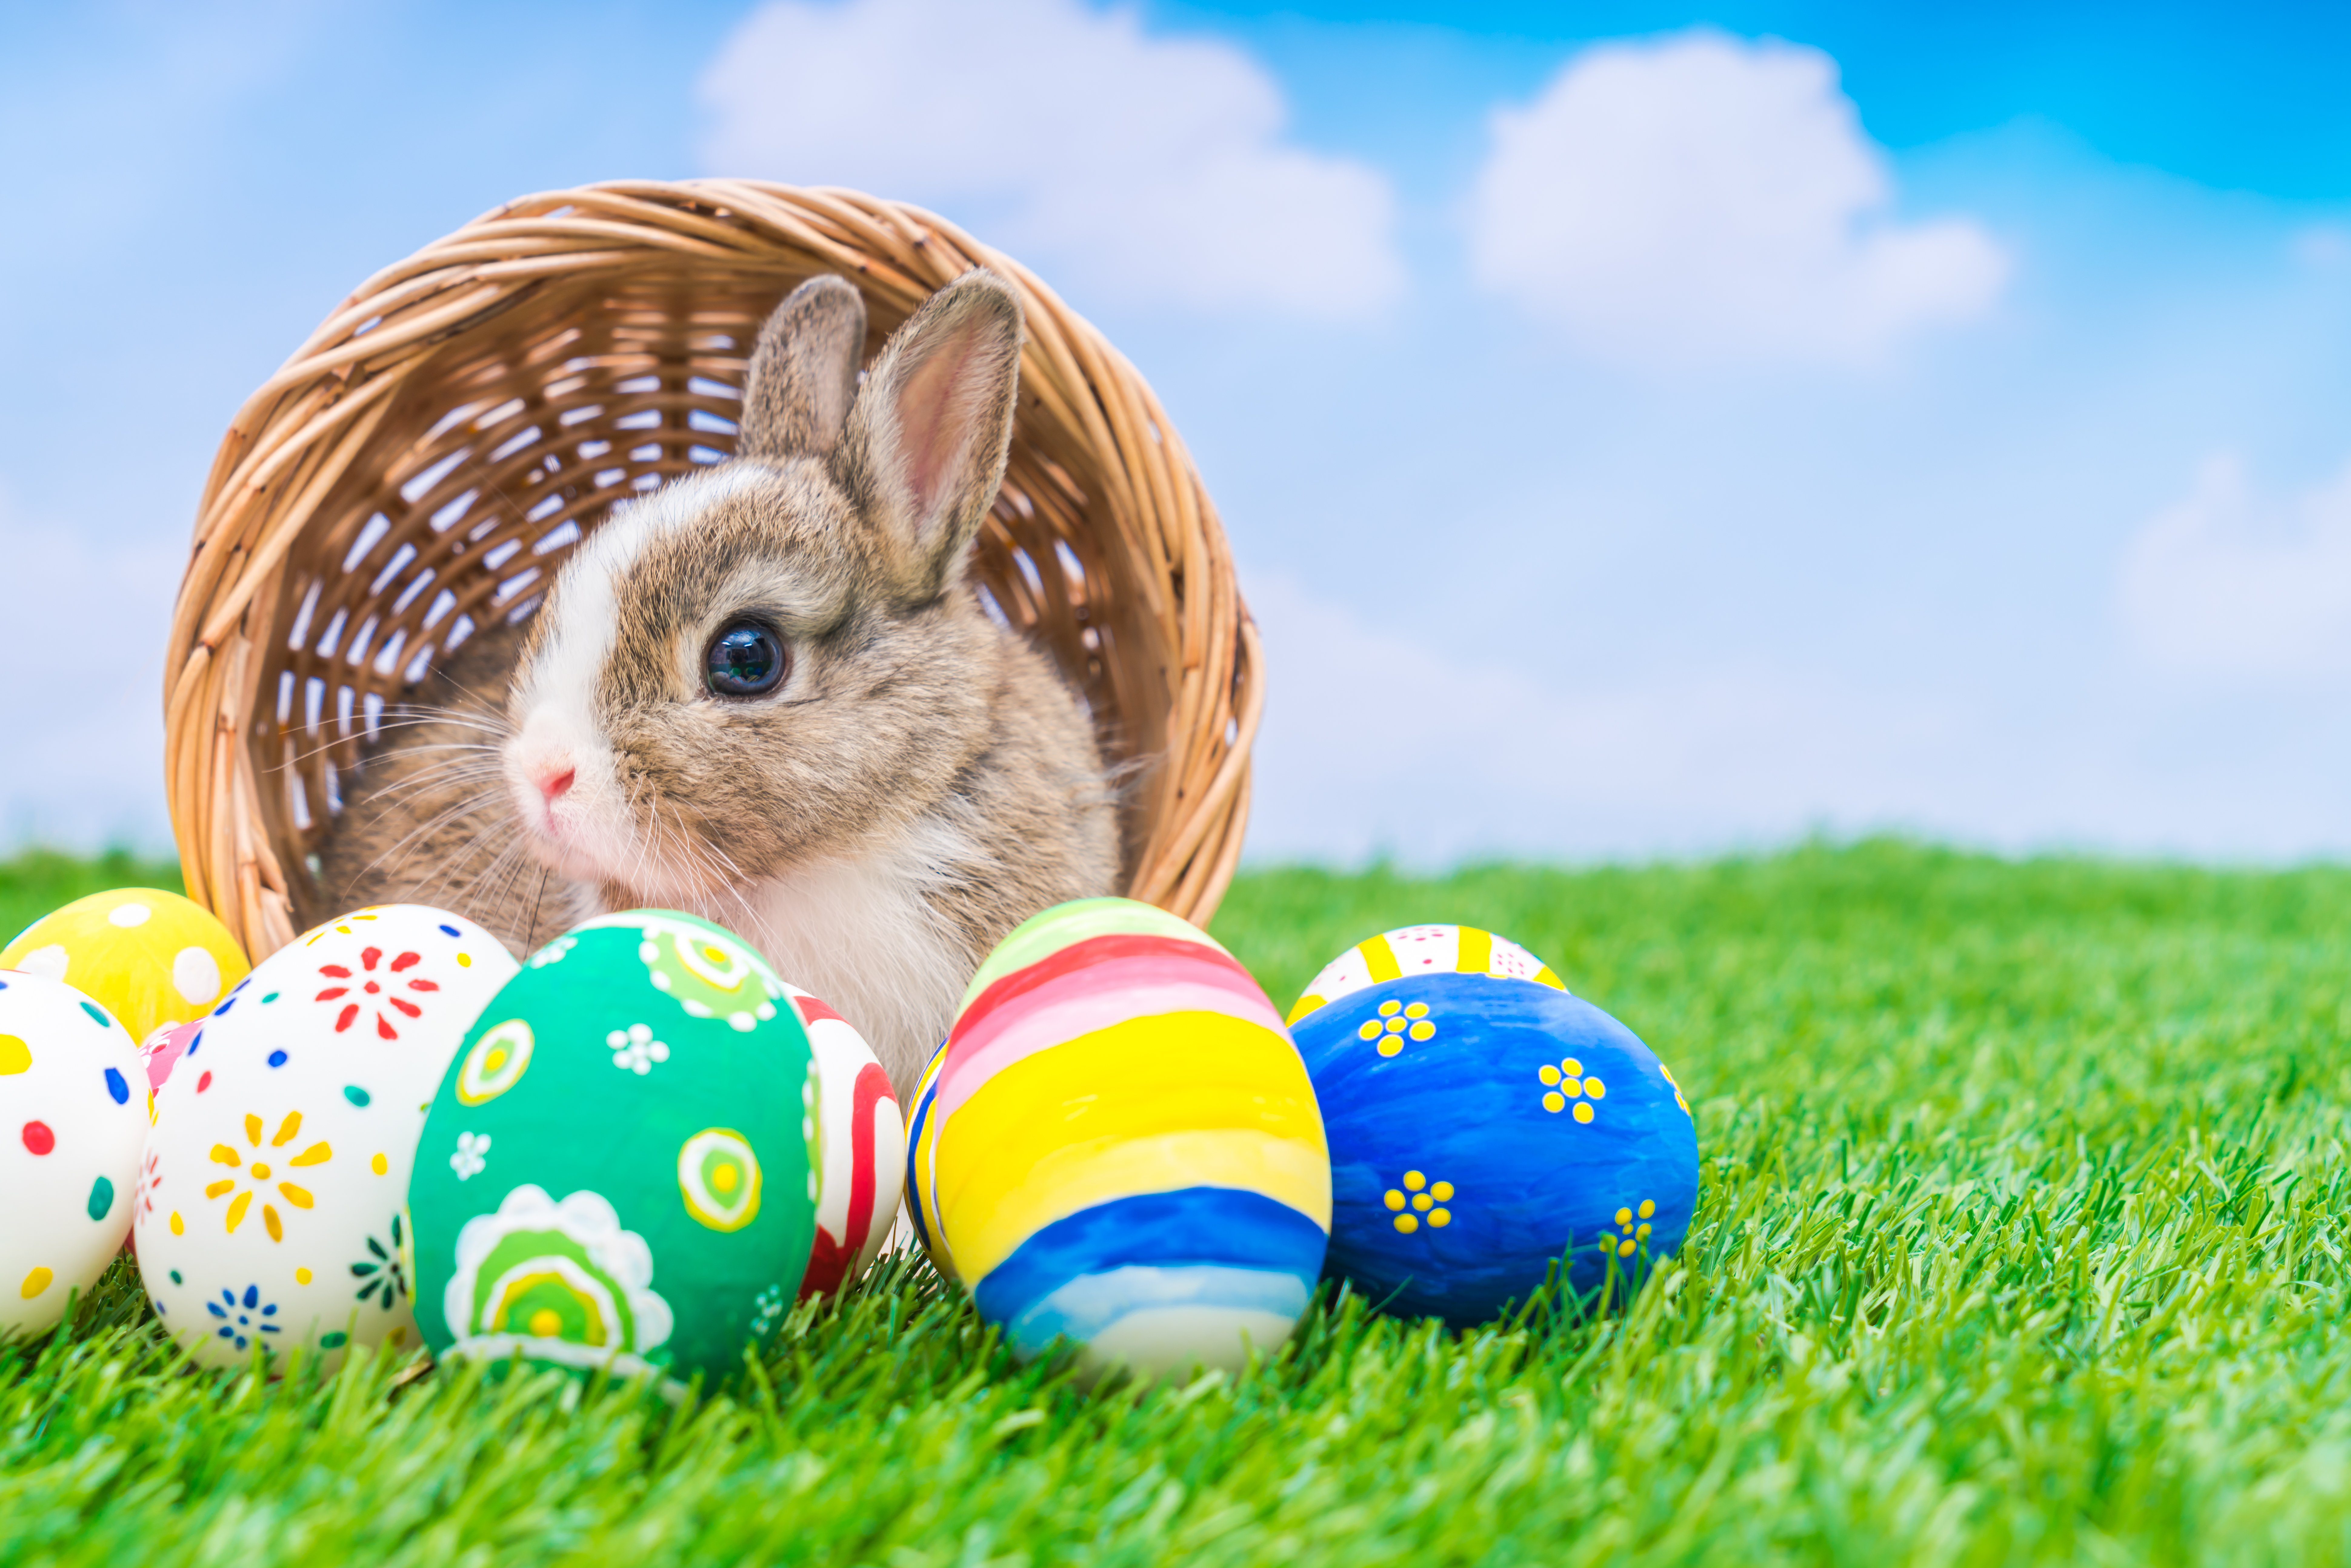 Символы пасхи пасхальный кролик. Пасхальный кролик Ostern. Easter Bunny — Пасхальный кролик. Пасхальное яйцо. Пасхальный заяц с яйцом.